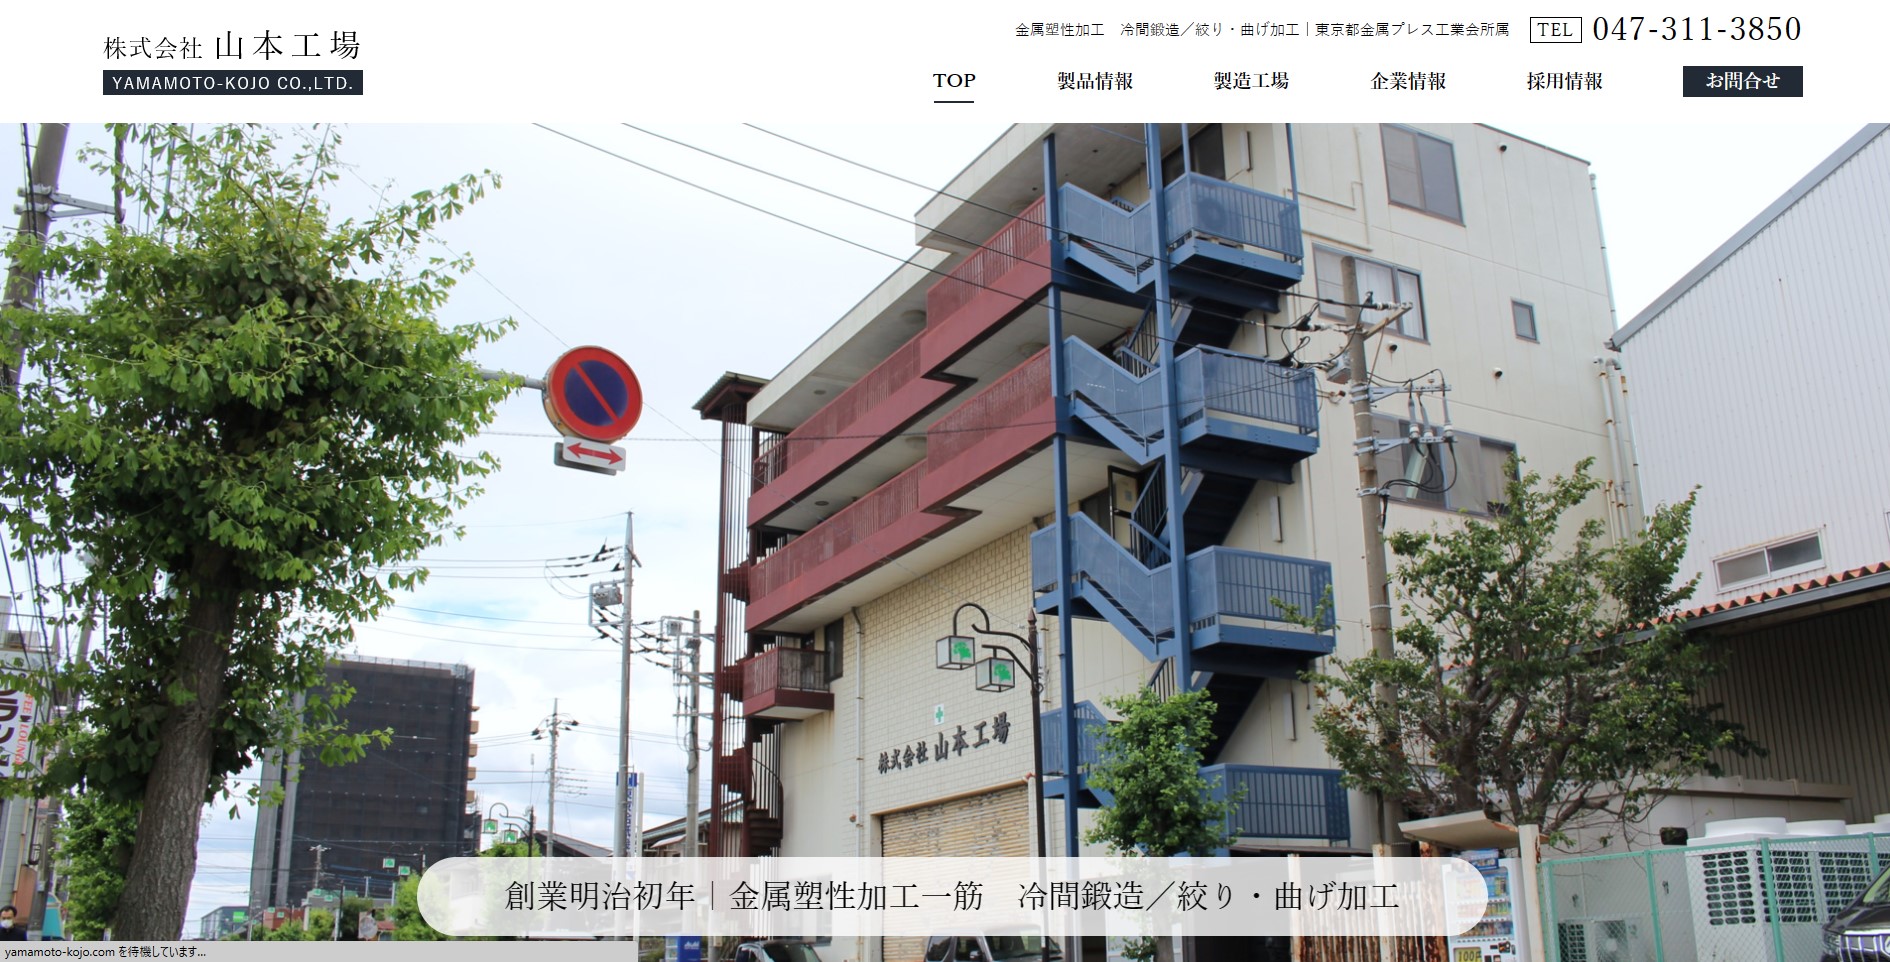 株式会社山本工場様のホームページ画像